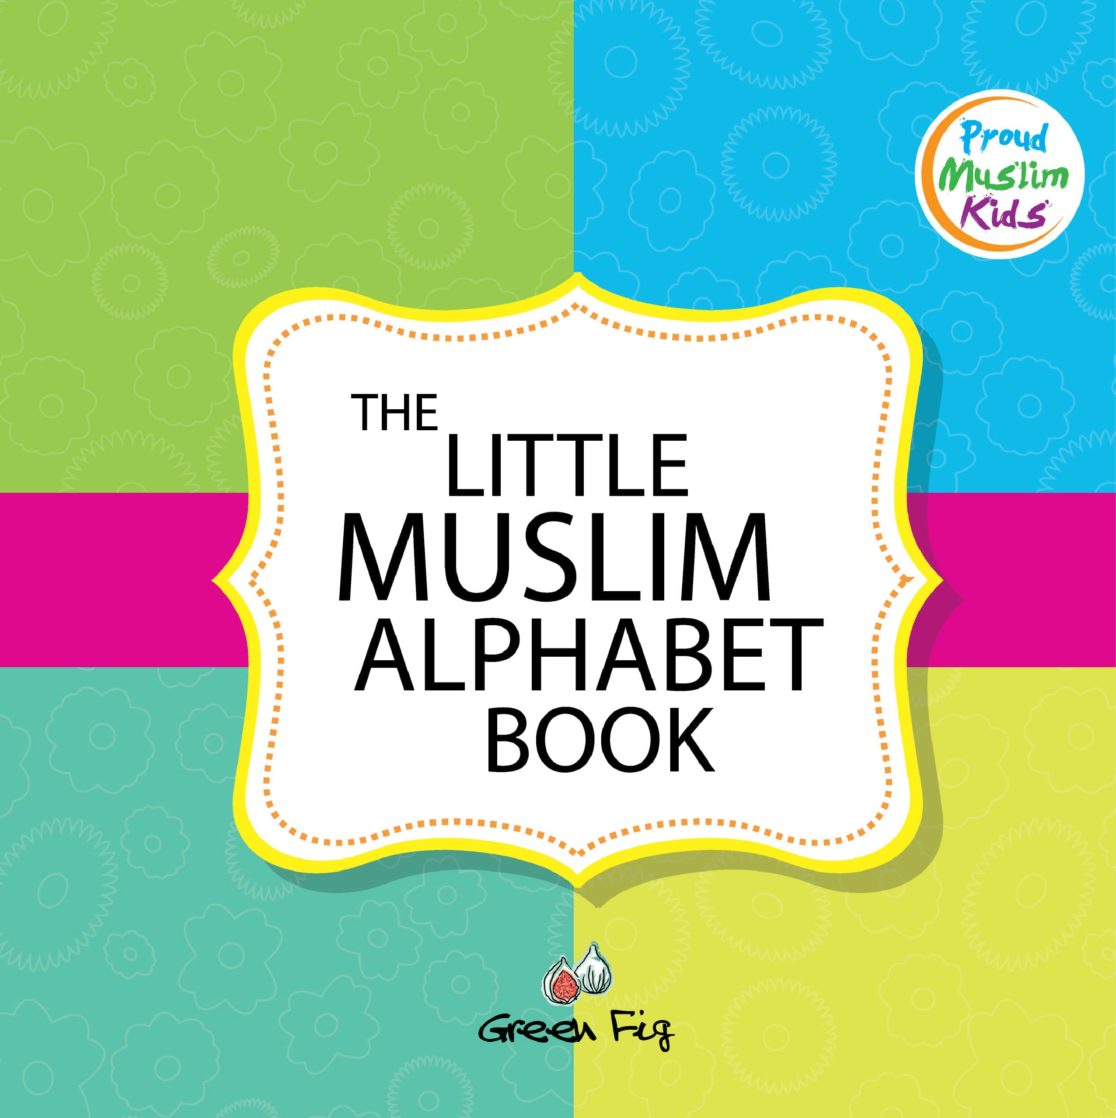 The Little Muslim Alphabet Book